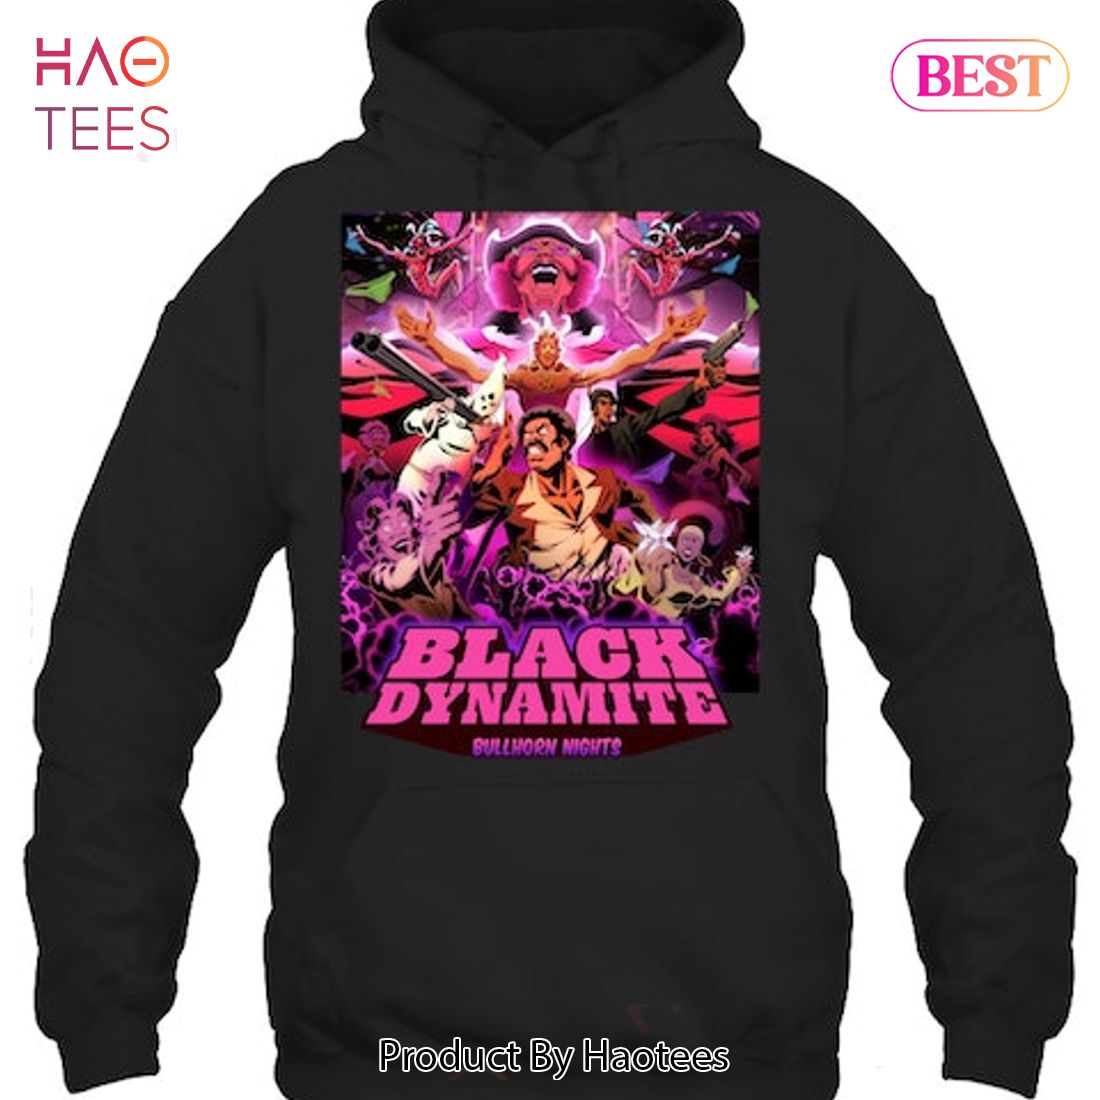 The BEST episodes of Black Dynamite | Episode Ninja